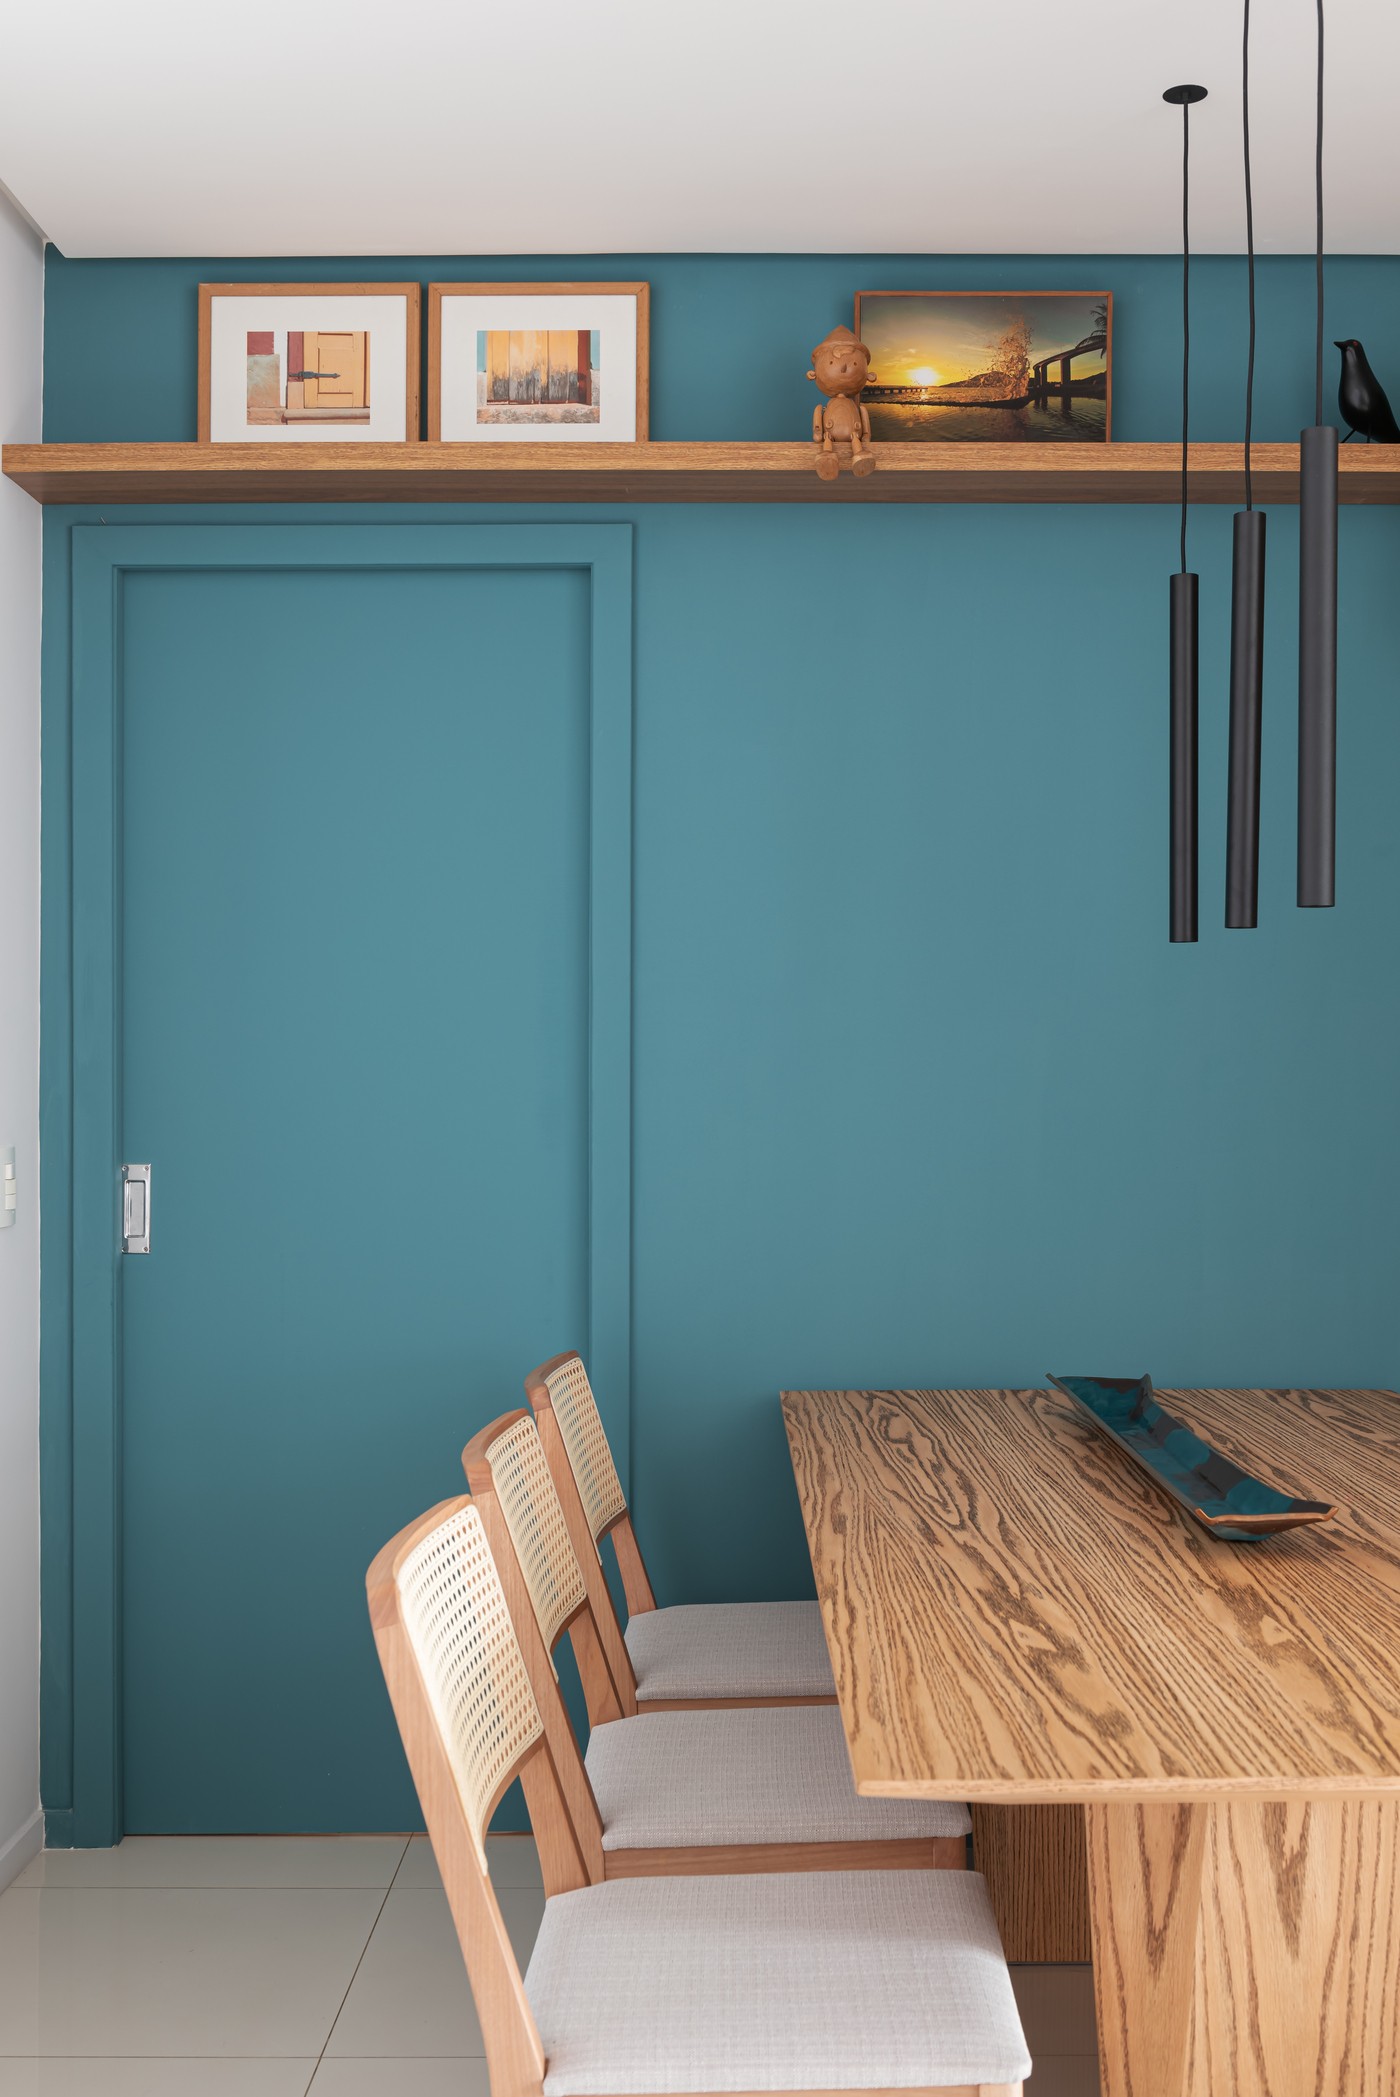 Décor do dia: sala de jantar pequena tem canto alemão e parede azul (Foto: Camila Santos)